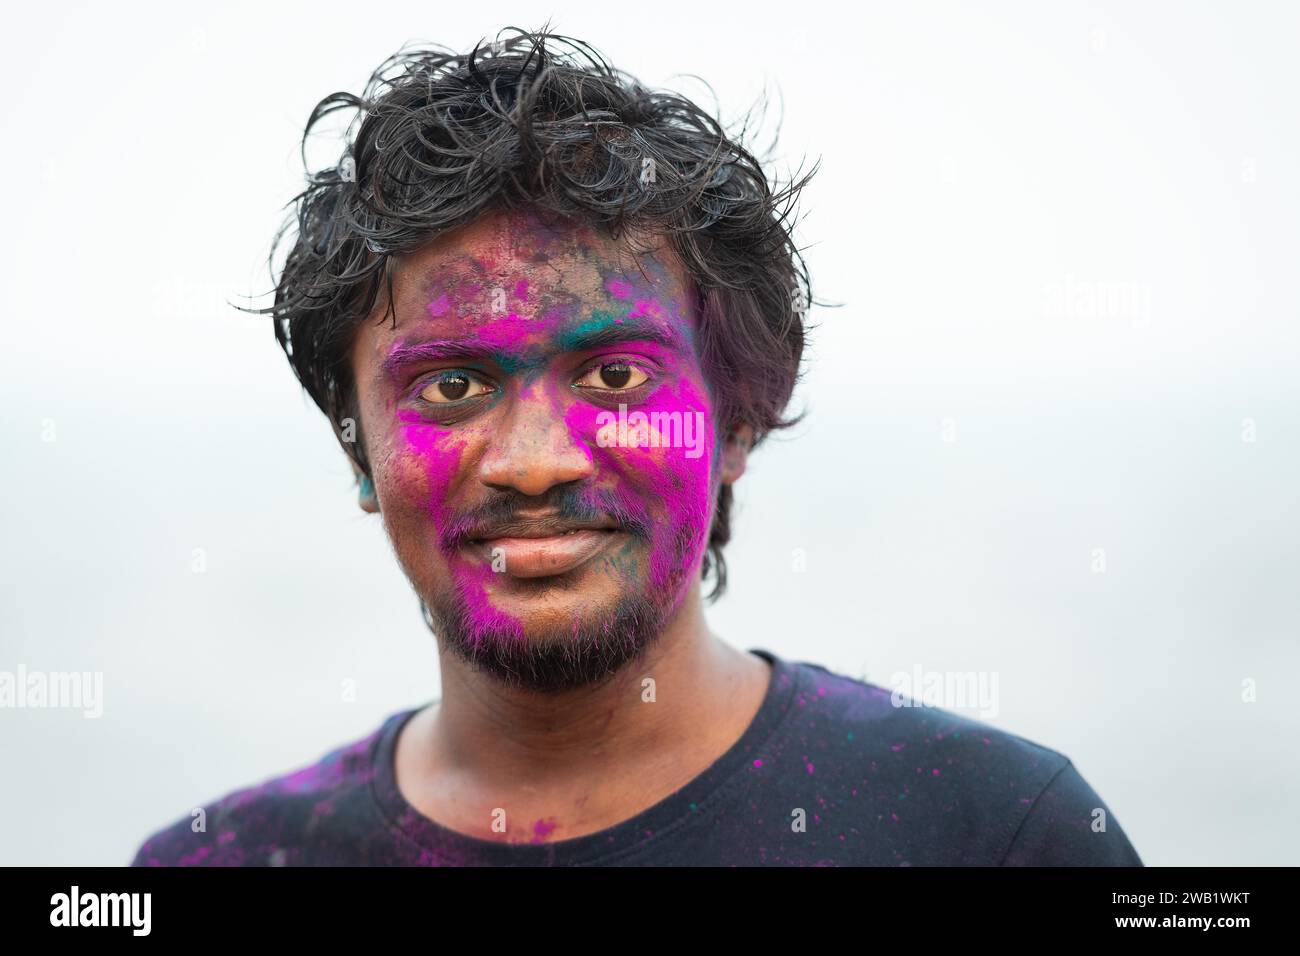 Mann mit Farbe im Gesicht, Holi Festival, indisches Frühlingsfest, traditionelles Farbenfest, Pondicherry oder Puducherry, Tamil Nadu, Indien Stockfoto